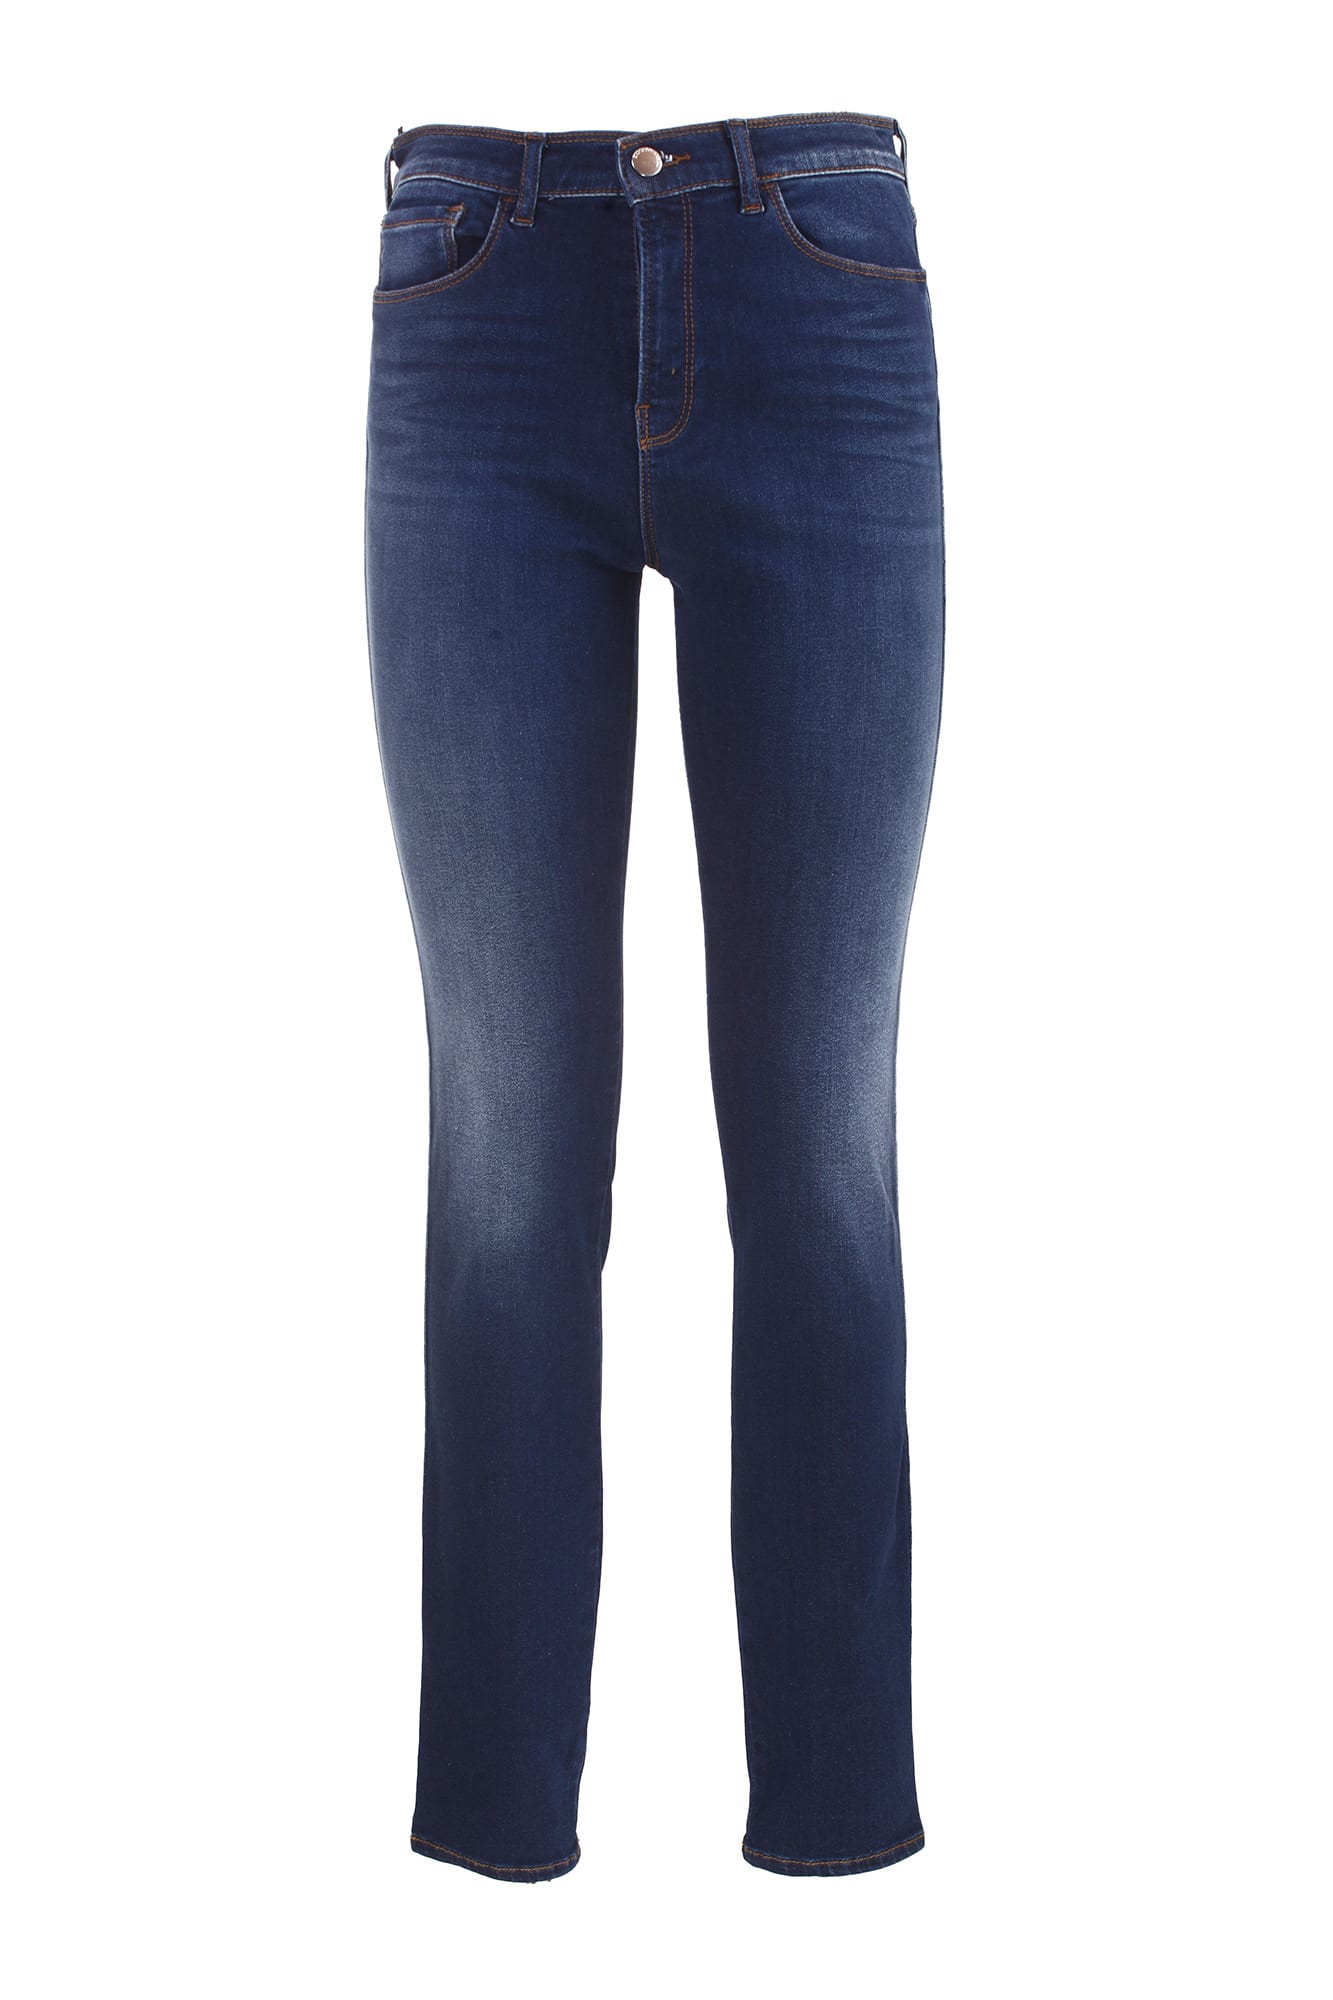 Giorgio Armani Jeans J18 High Waist And Skinny Leg Giorgio Armani